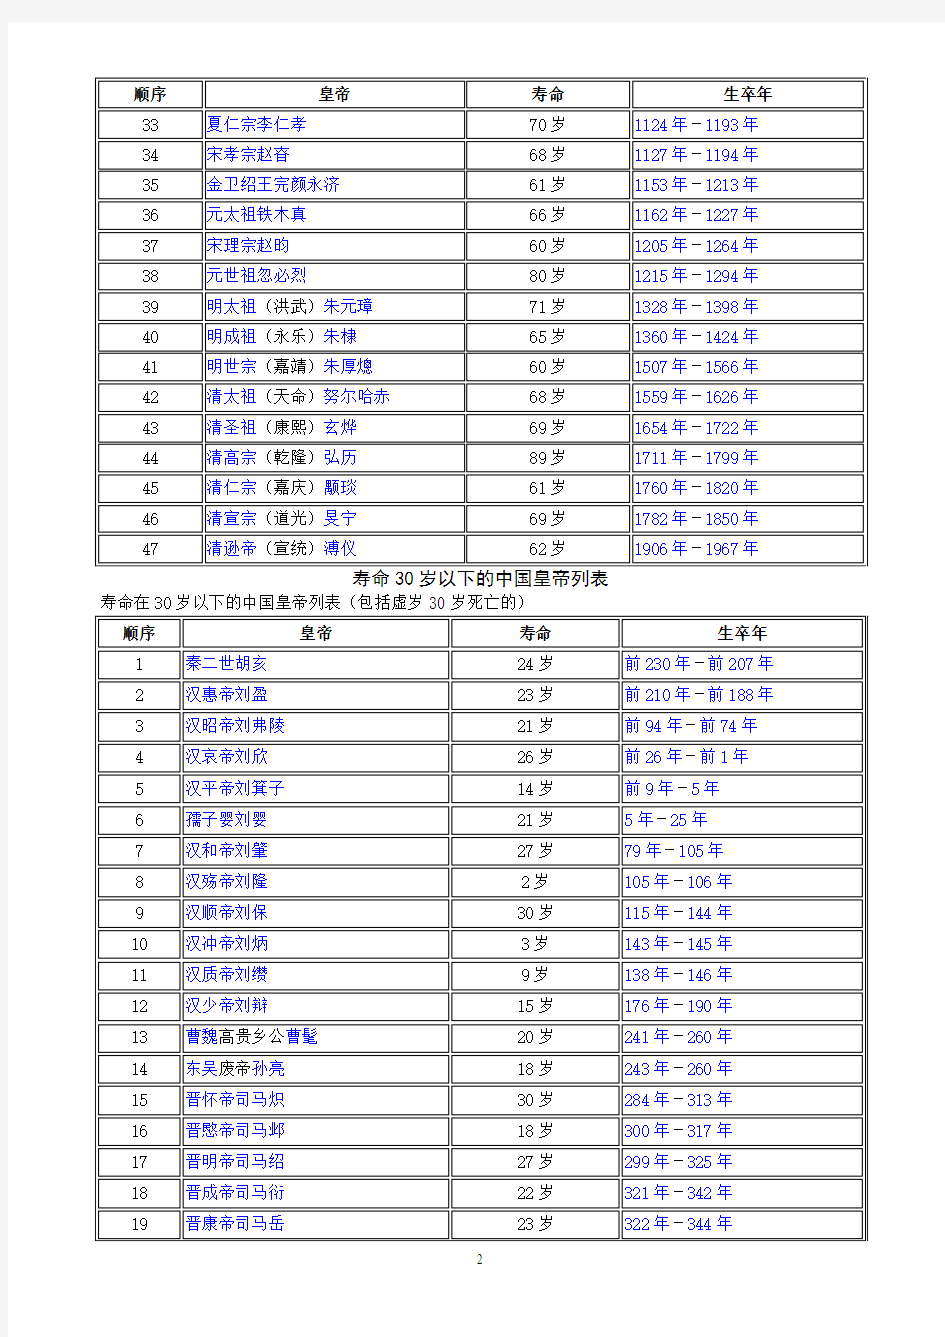 寿命60岁以上、30岁以下的中国皇帝列表(已校对,无错误)